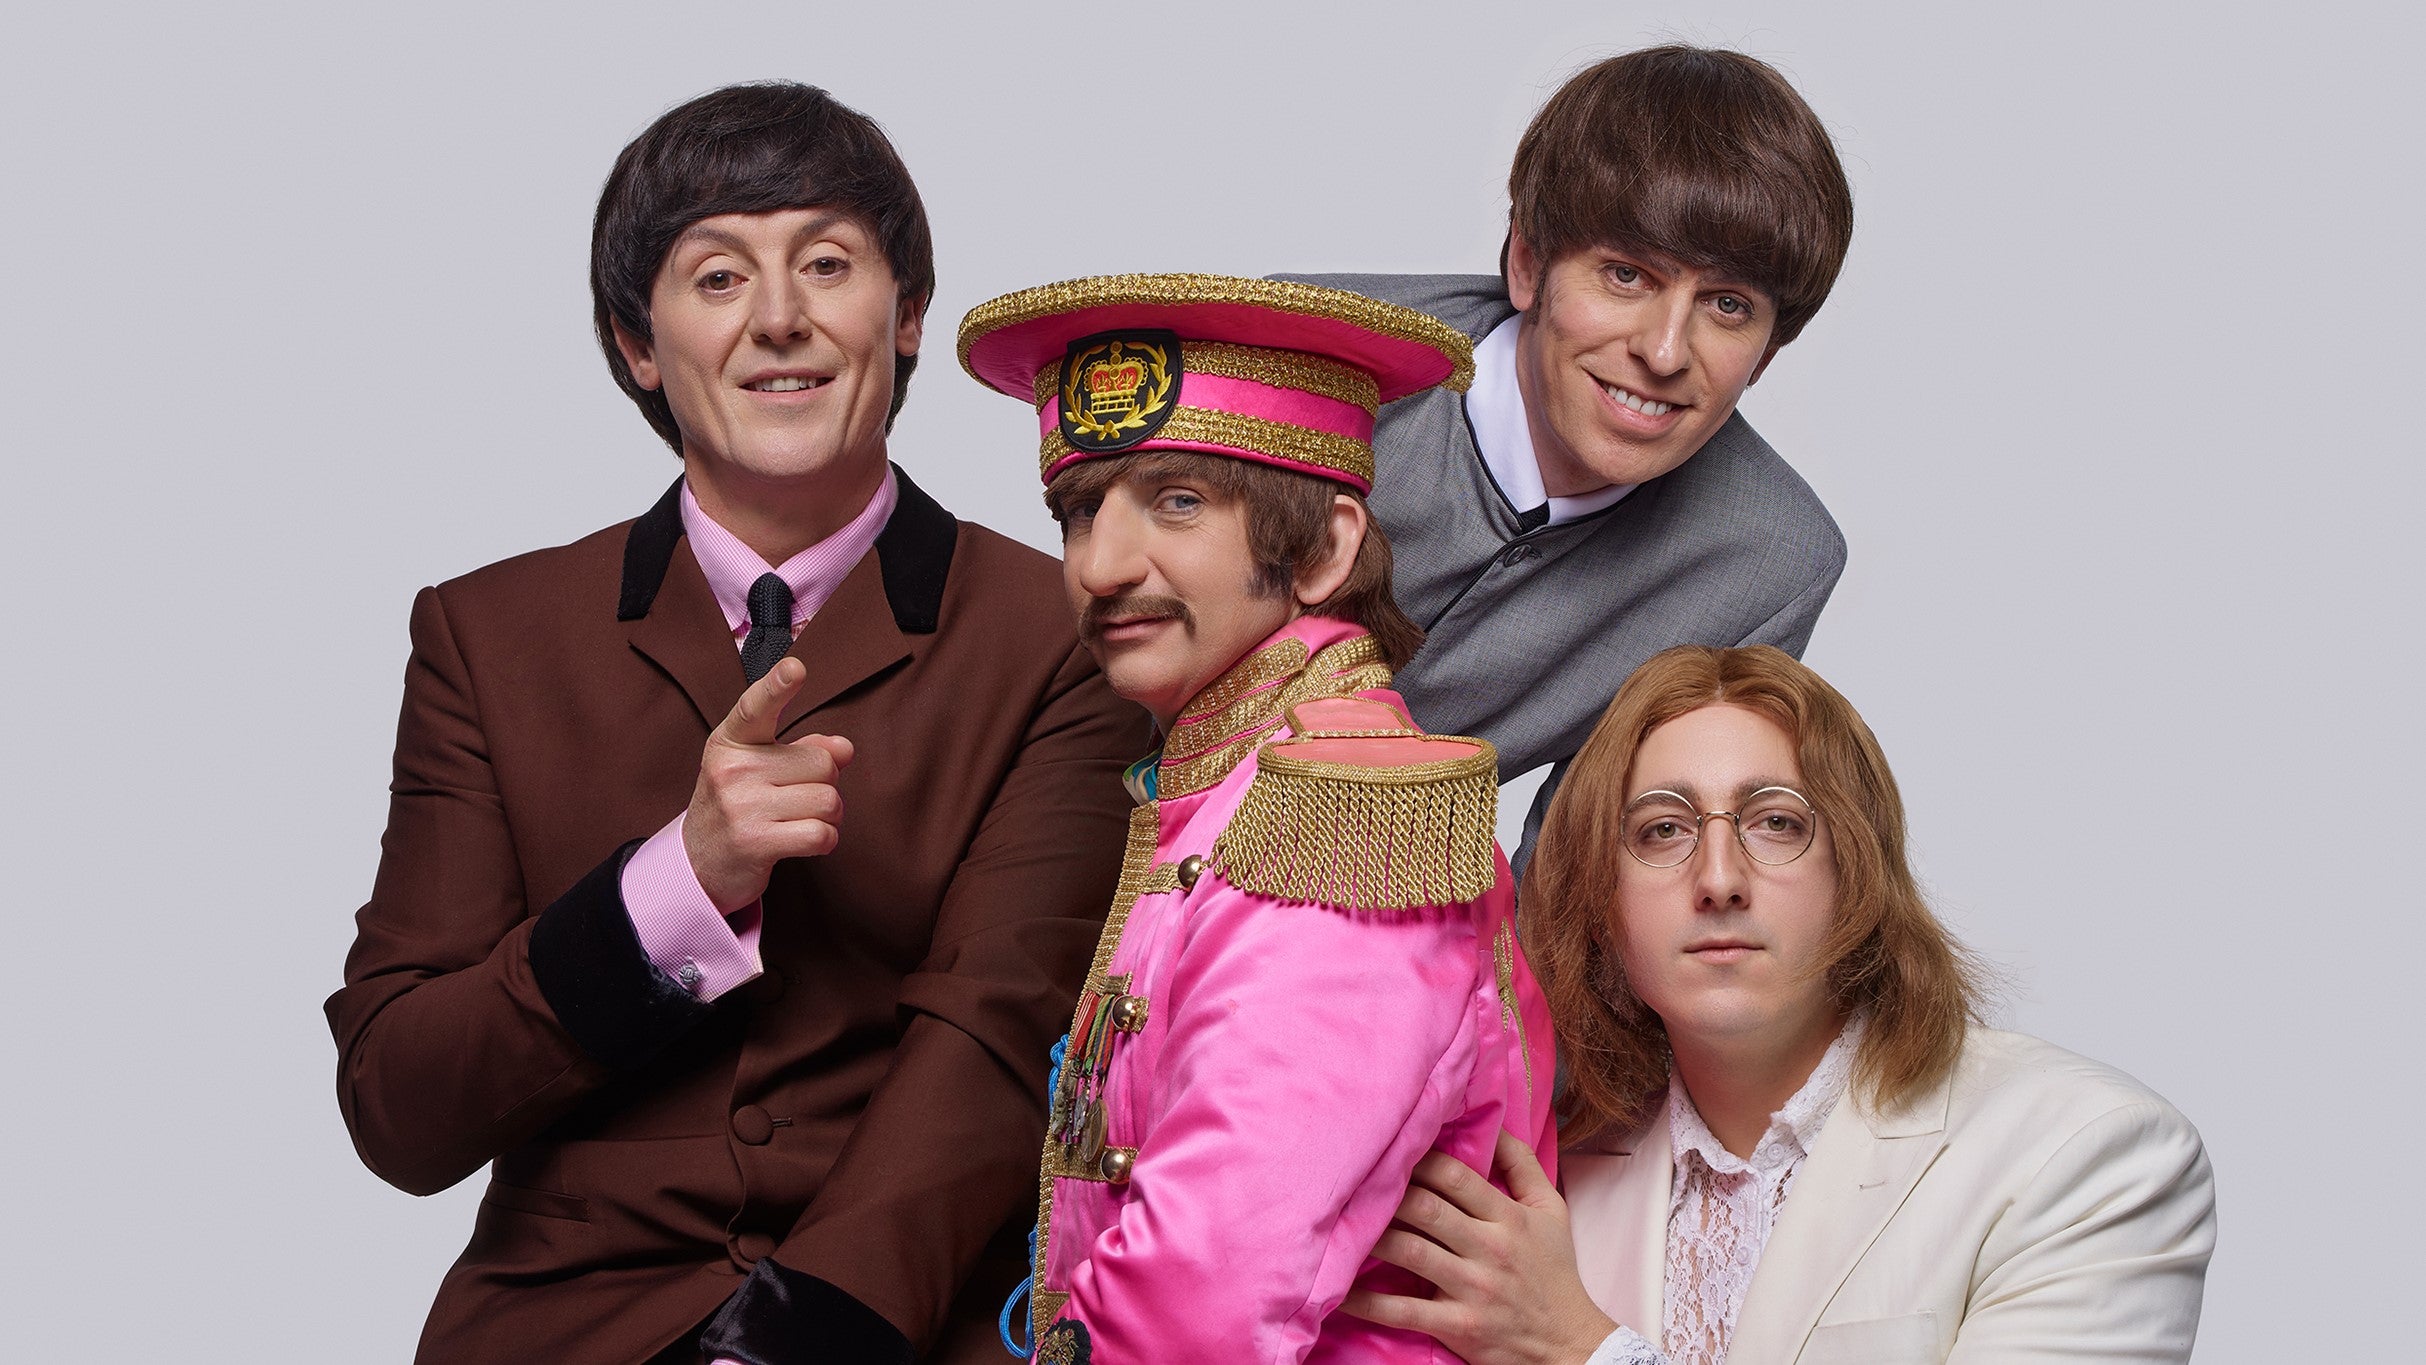 The Bootleg Beatles at London Palladium Tickets